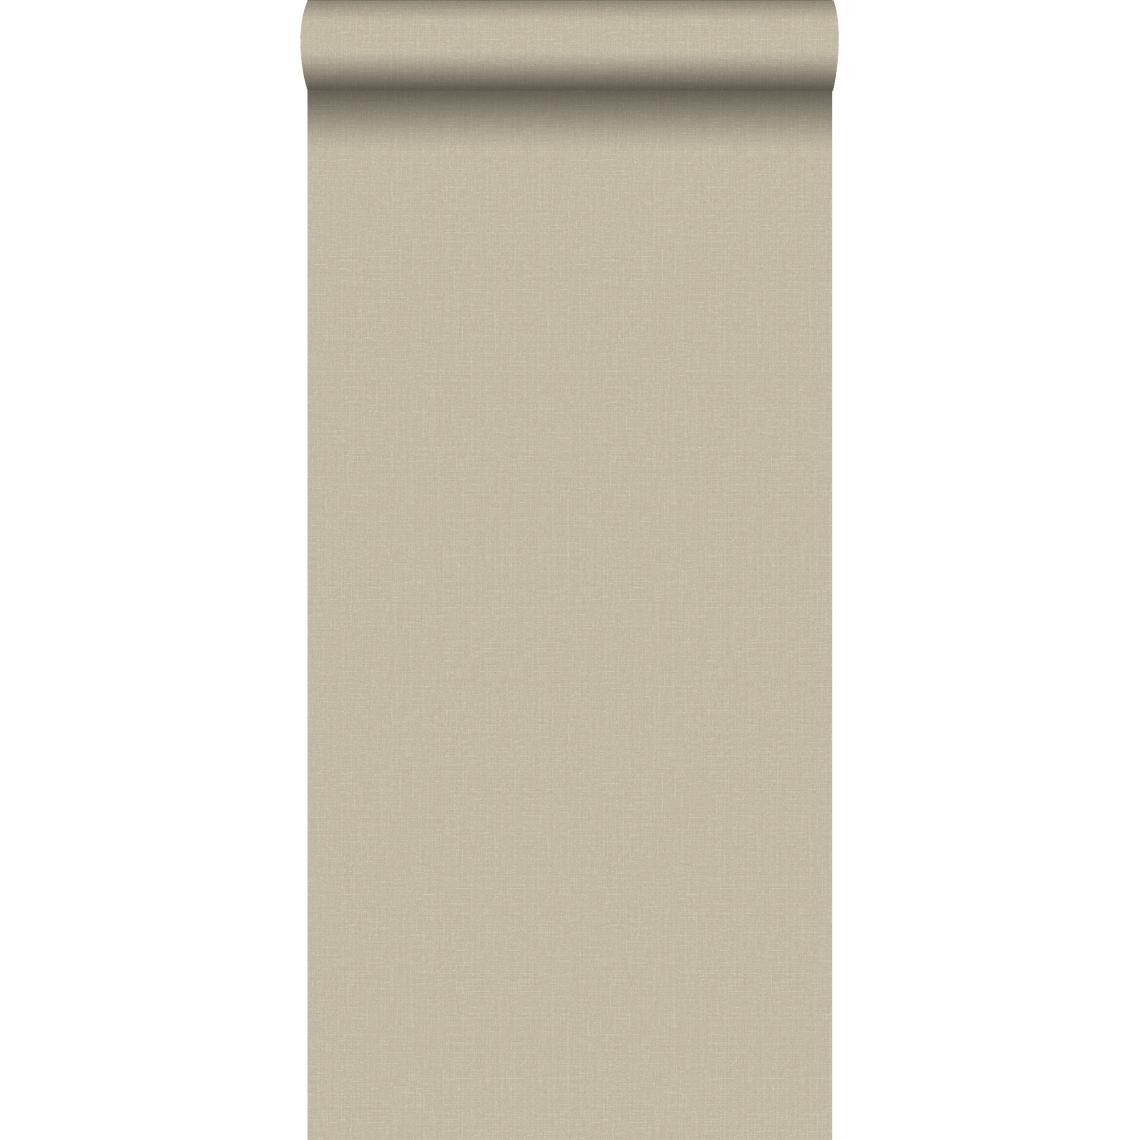 ESTAhome - ESTAhome papier peint uni mat avec texture de lin marron - 127648 - 53 cm x 10,05 m - Papier peint